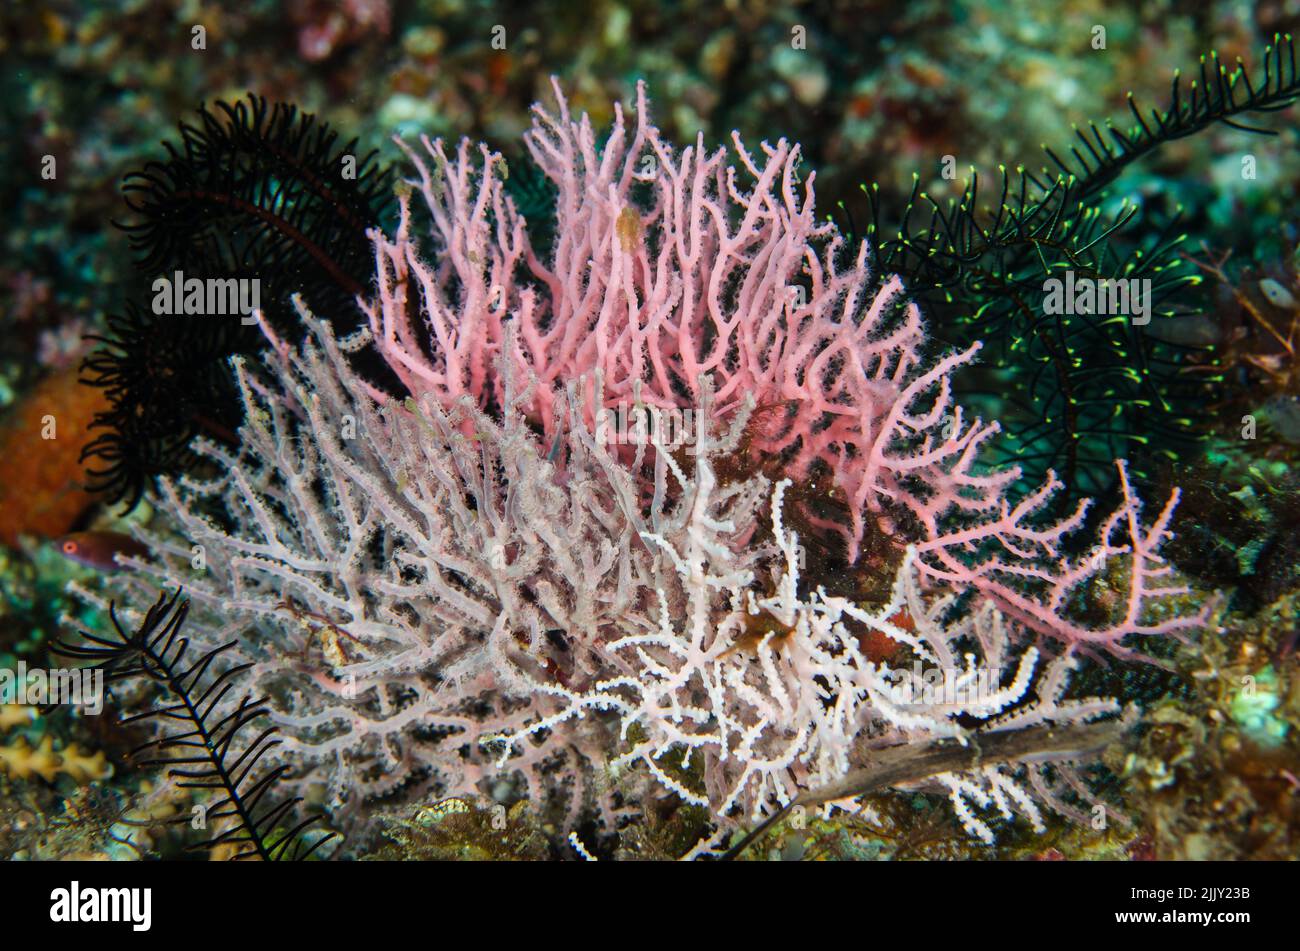 Corail noué, Melithaea sp., Melithaeidae, Anilao, Batangas, Philippines, Indo-océan pacifique, Asie Banque D'Images